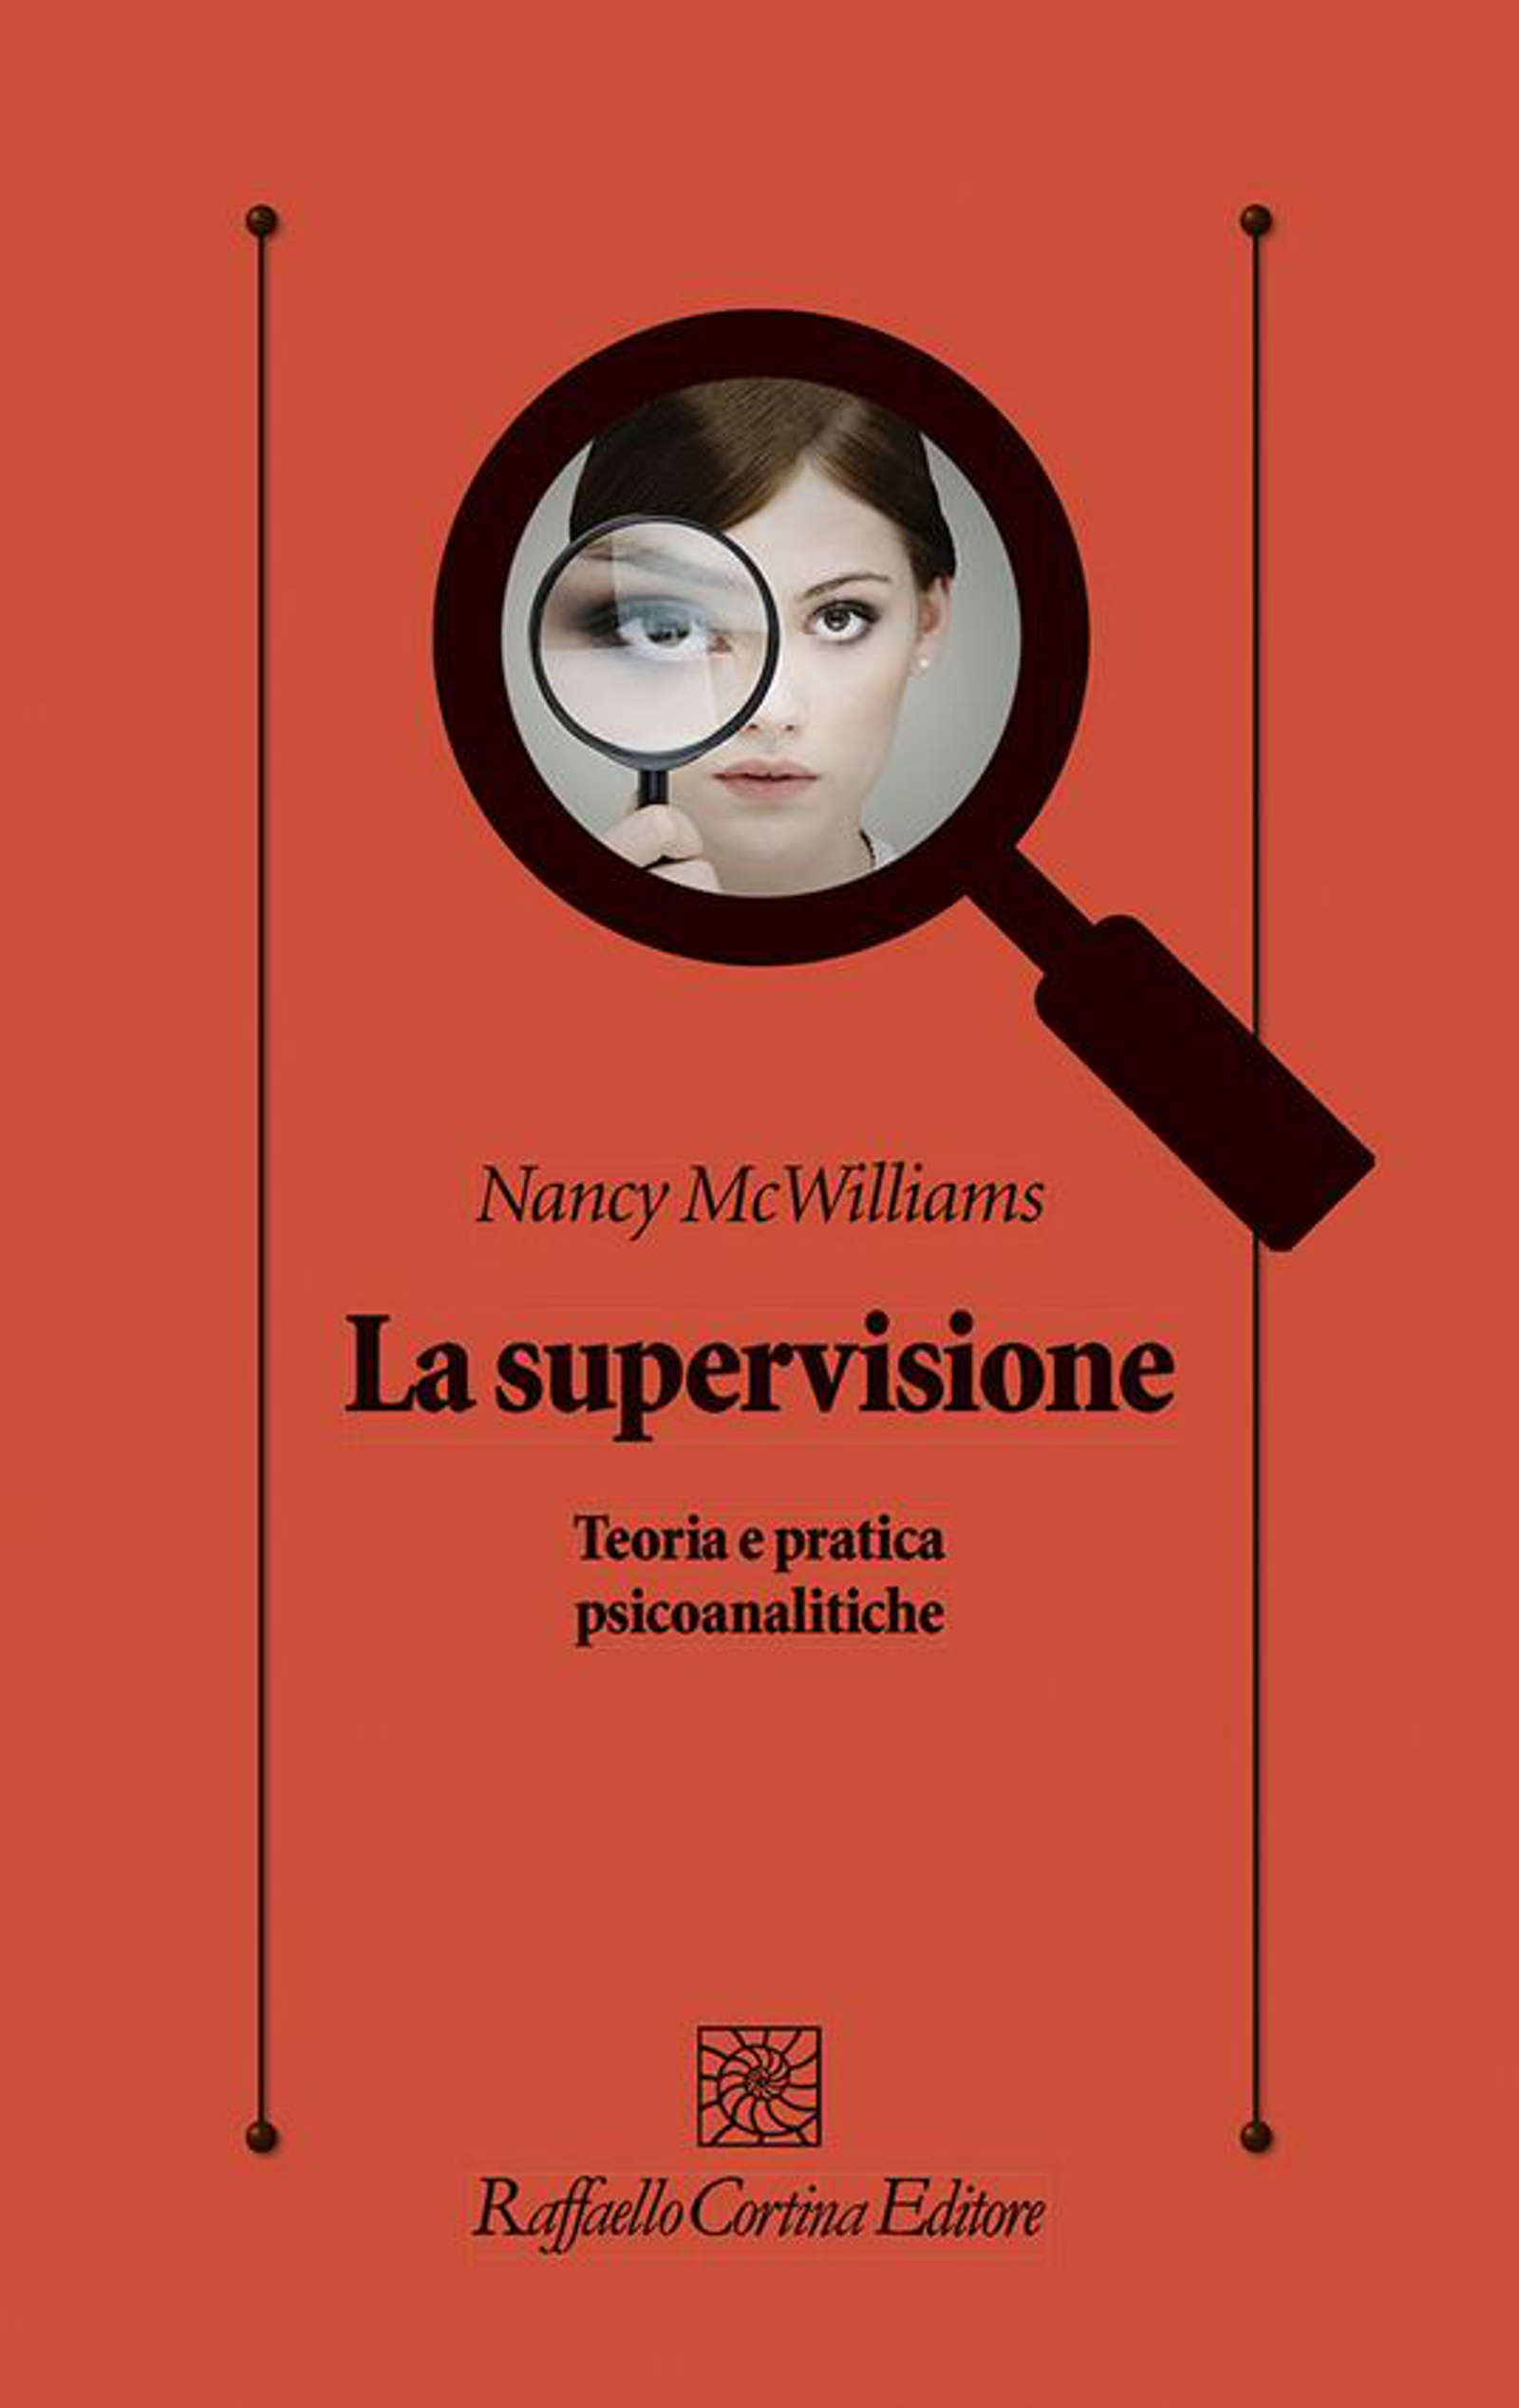 La supervisione (2022) di Nancy McWilliams – Recensione